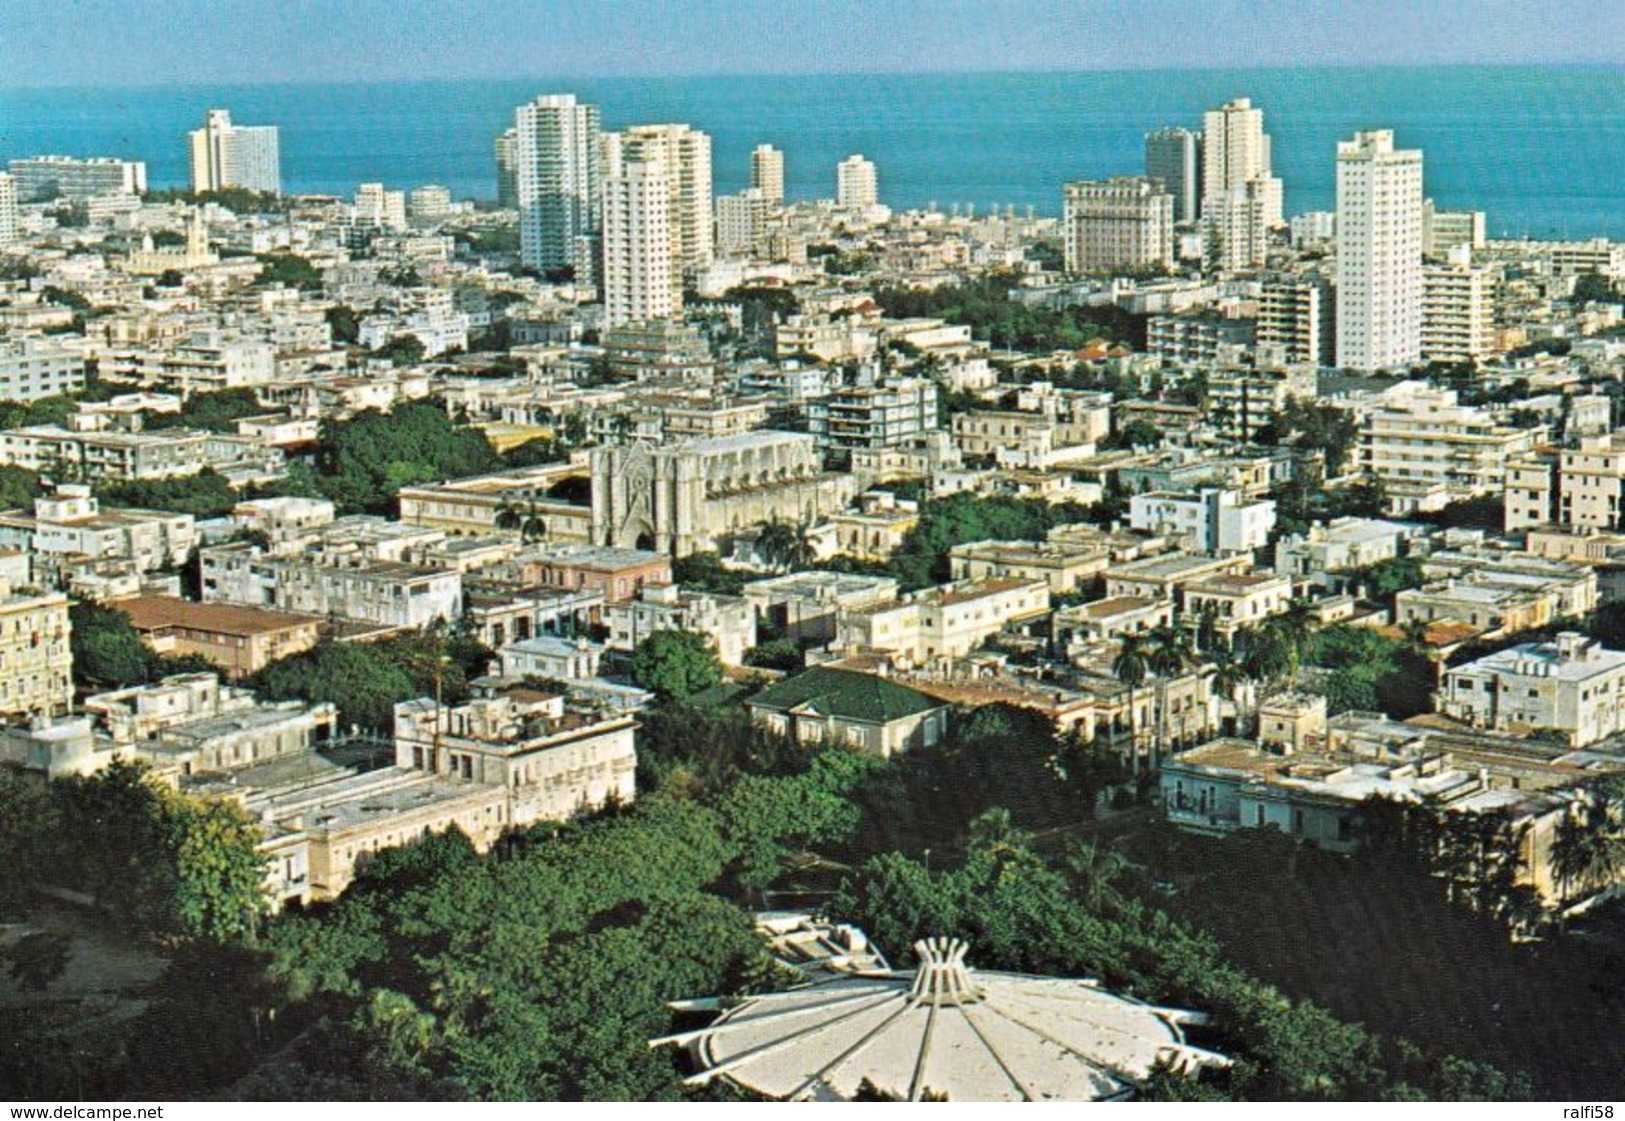 1 AK Kuba * Blick Auf Das Moderne Zentrum Der Hauptstadt Havanna - Luftbildaufnahme * - Cuba